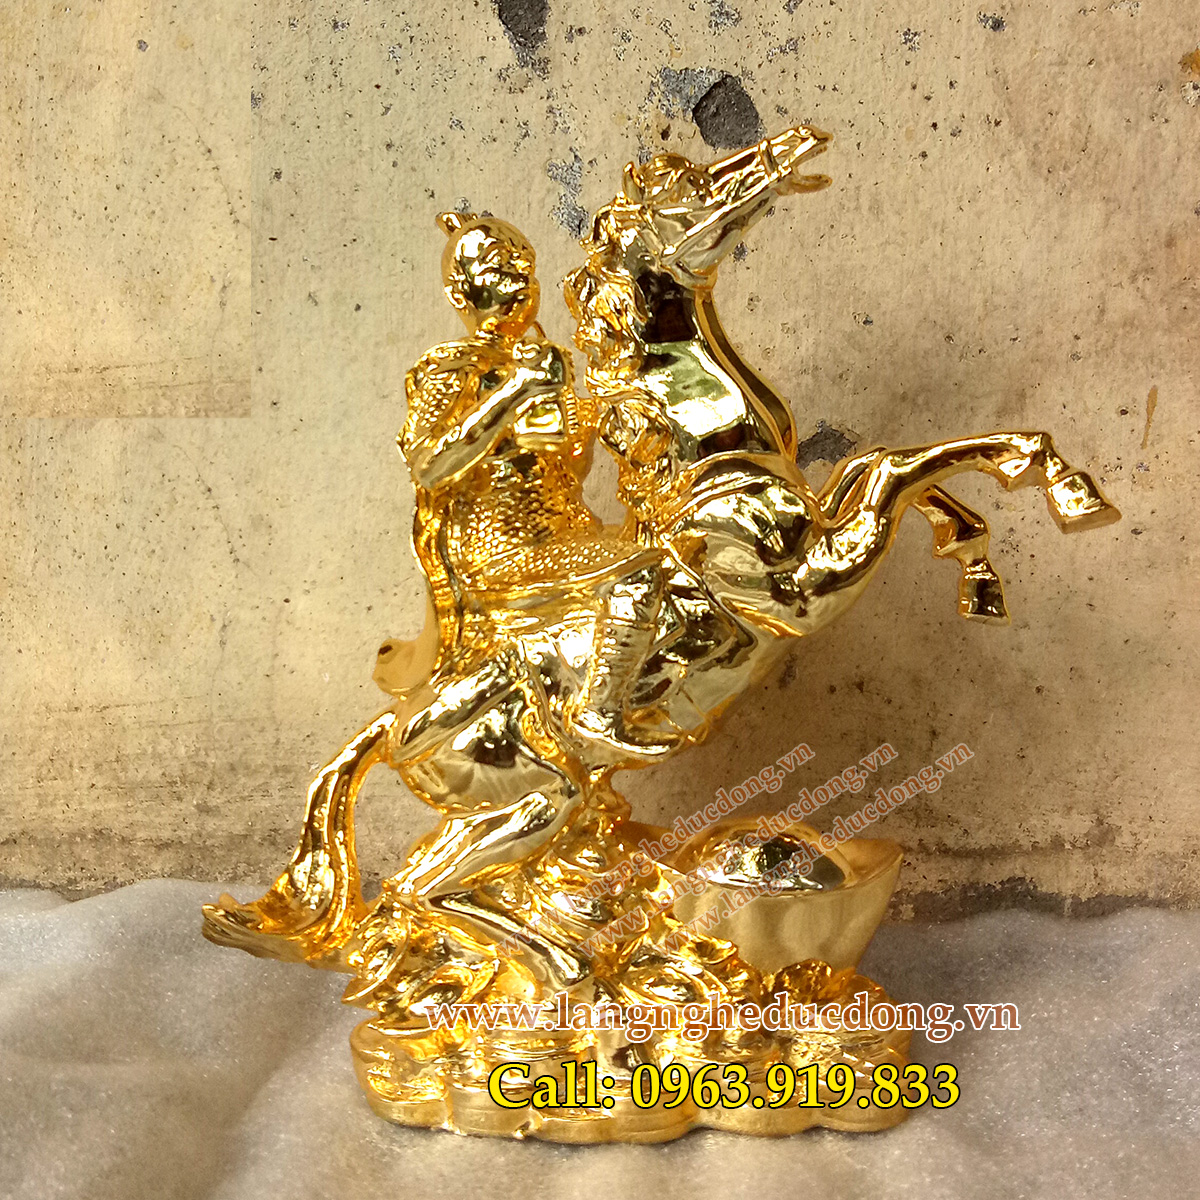 langngheducdong.vn - tượng phong thủy, ngựa đồng, ngựa phong thủy mạ vàng